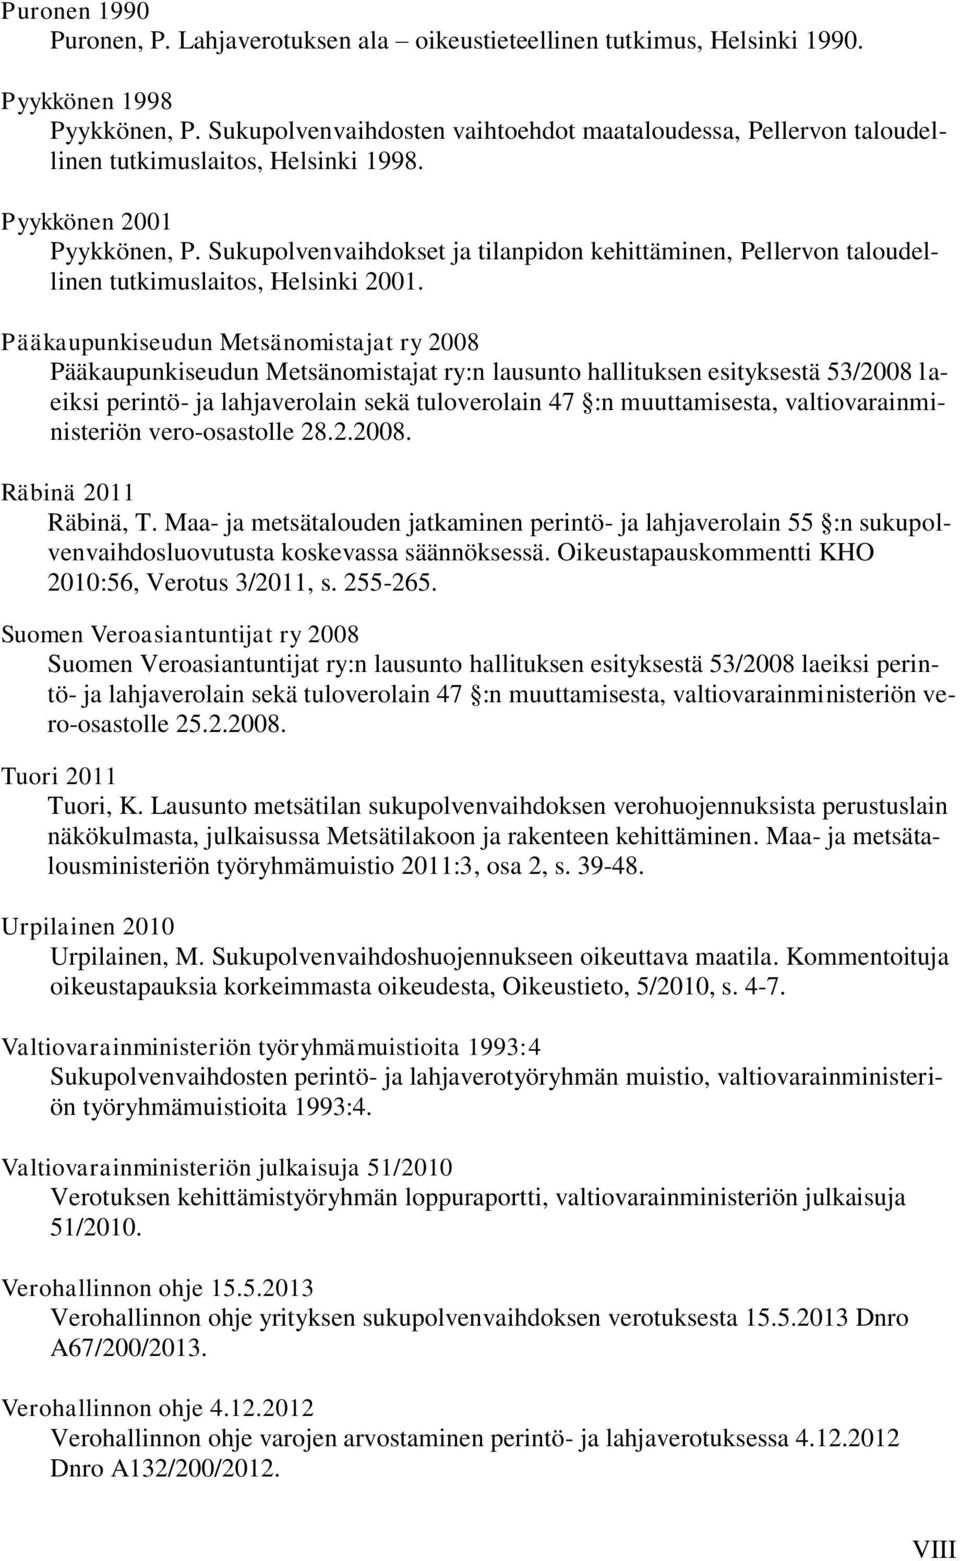 Sukupolvenvaihdokset ja tilanpidon kehittäminen, Pellervon taloudellinen tutkimuslaitos, Helsinki 2001.